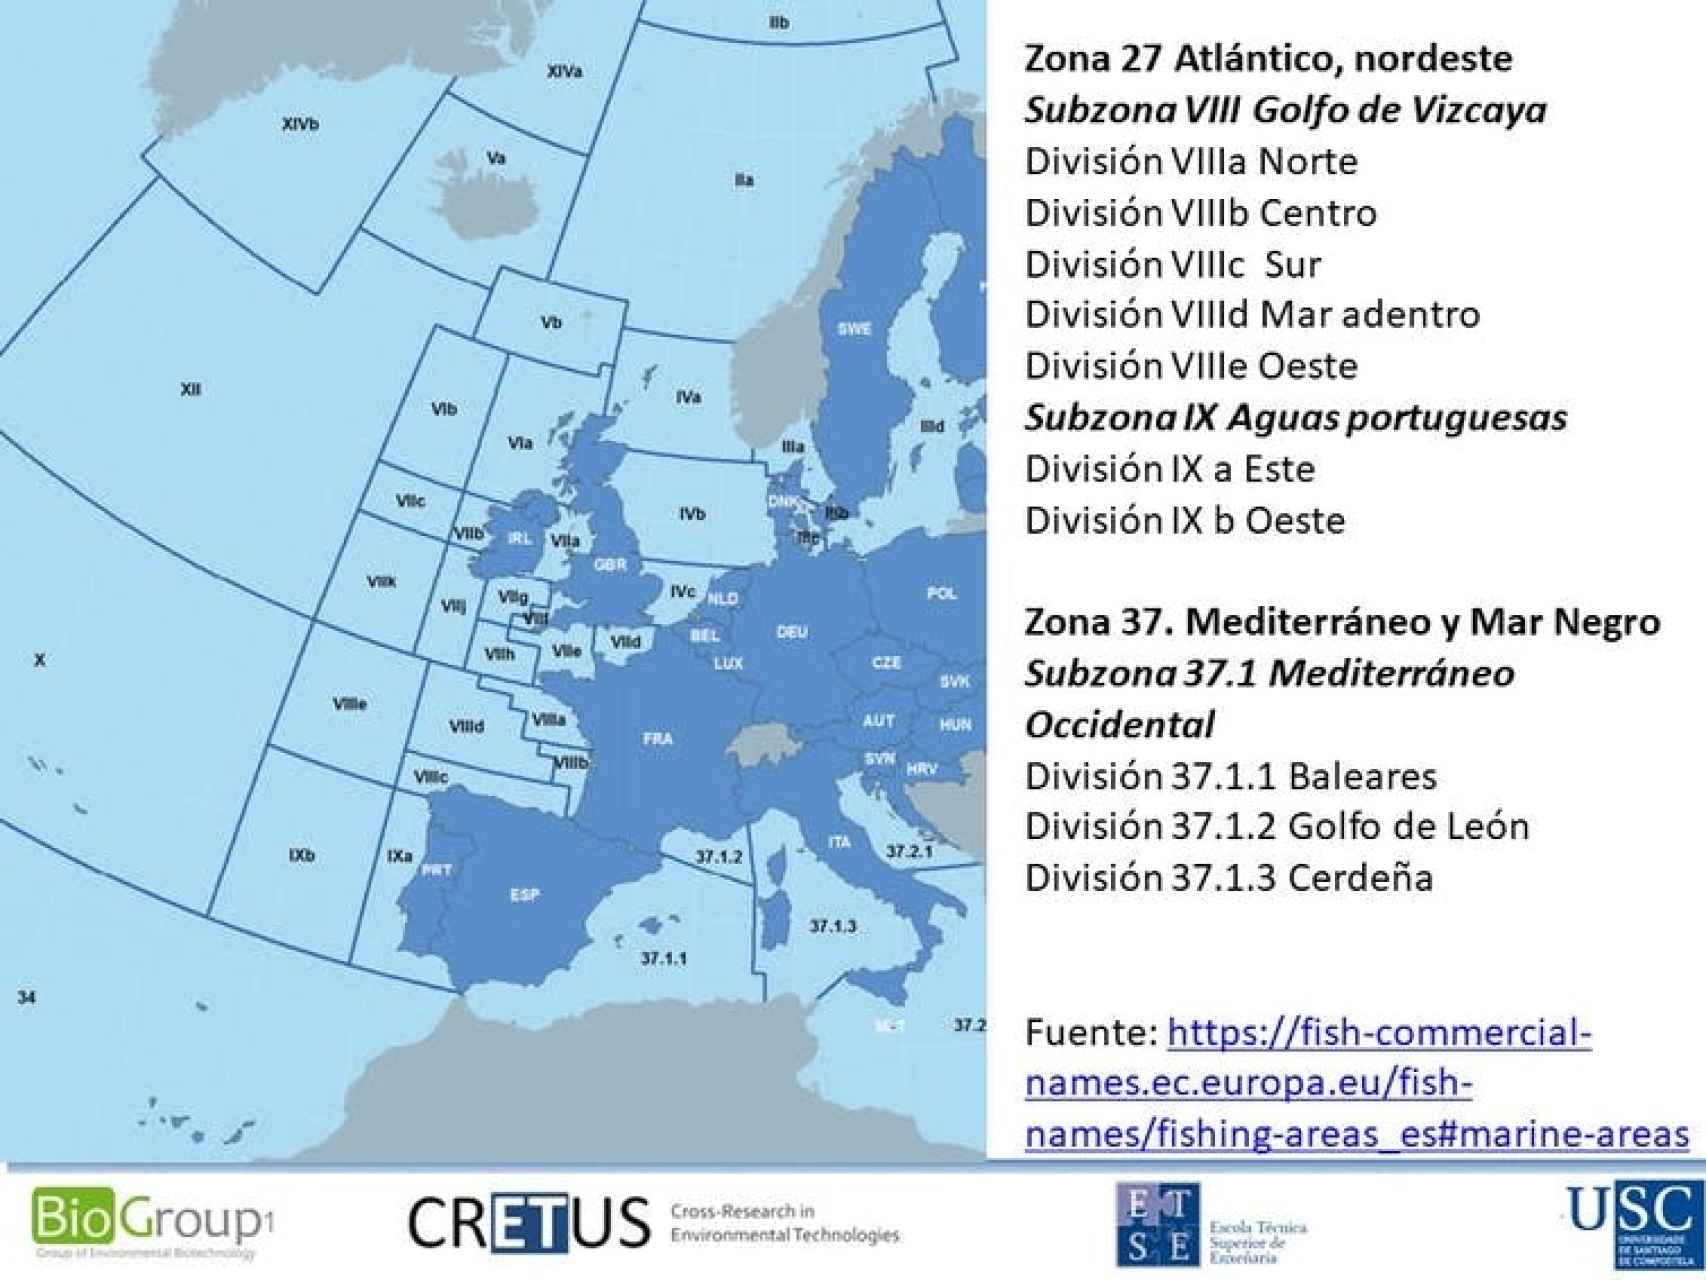 Especificación de algunas subzonas y divisiones de las zonas 27 (Atlántico, nordeste) y 37 (Mediterráneo y mar Negro).